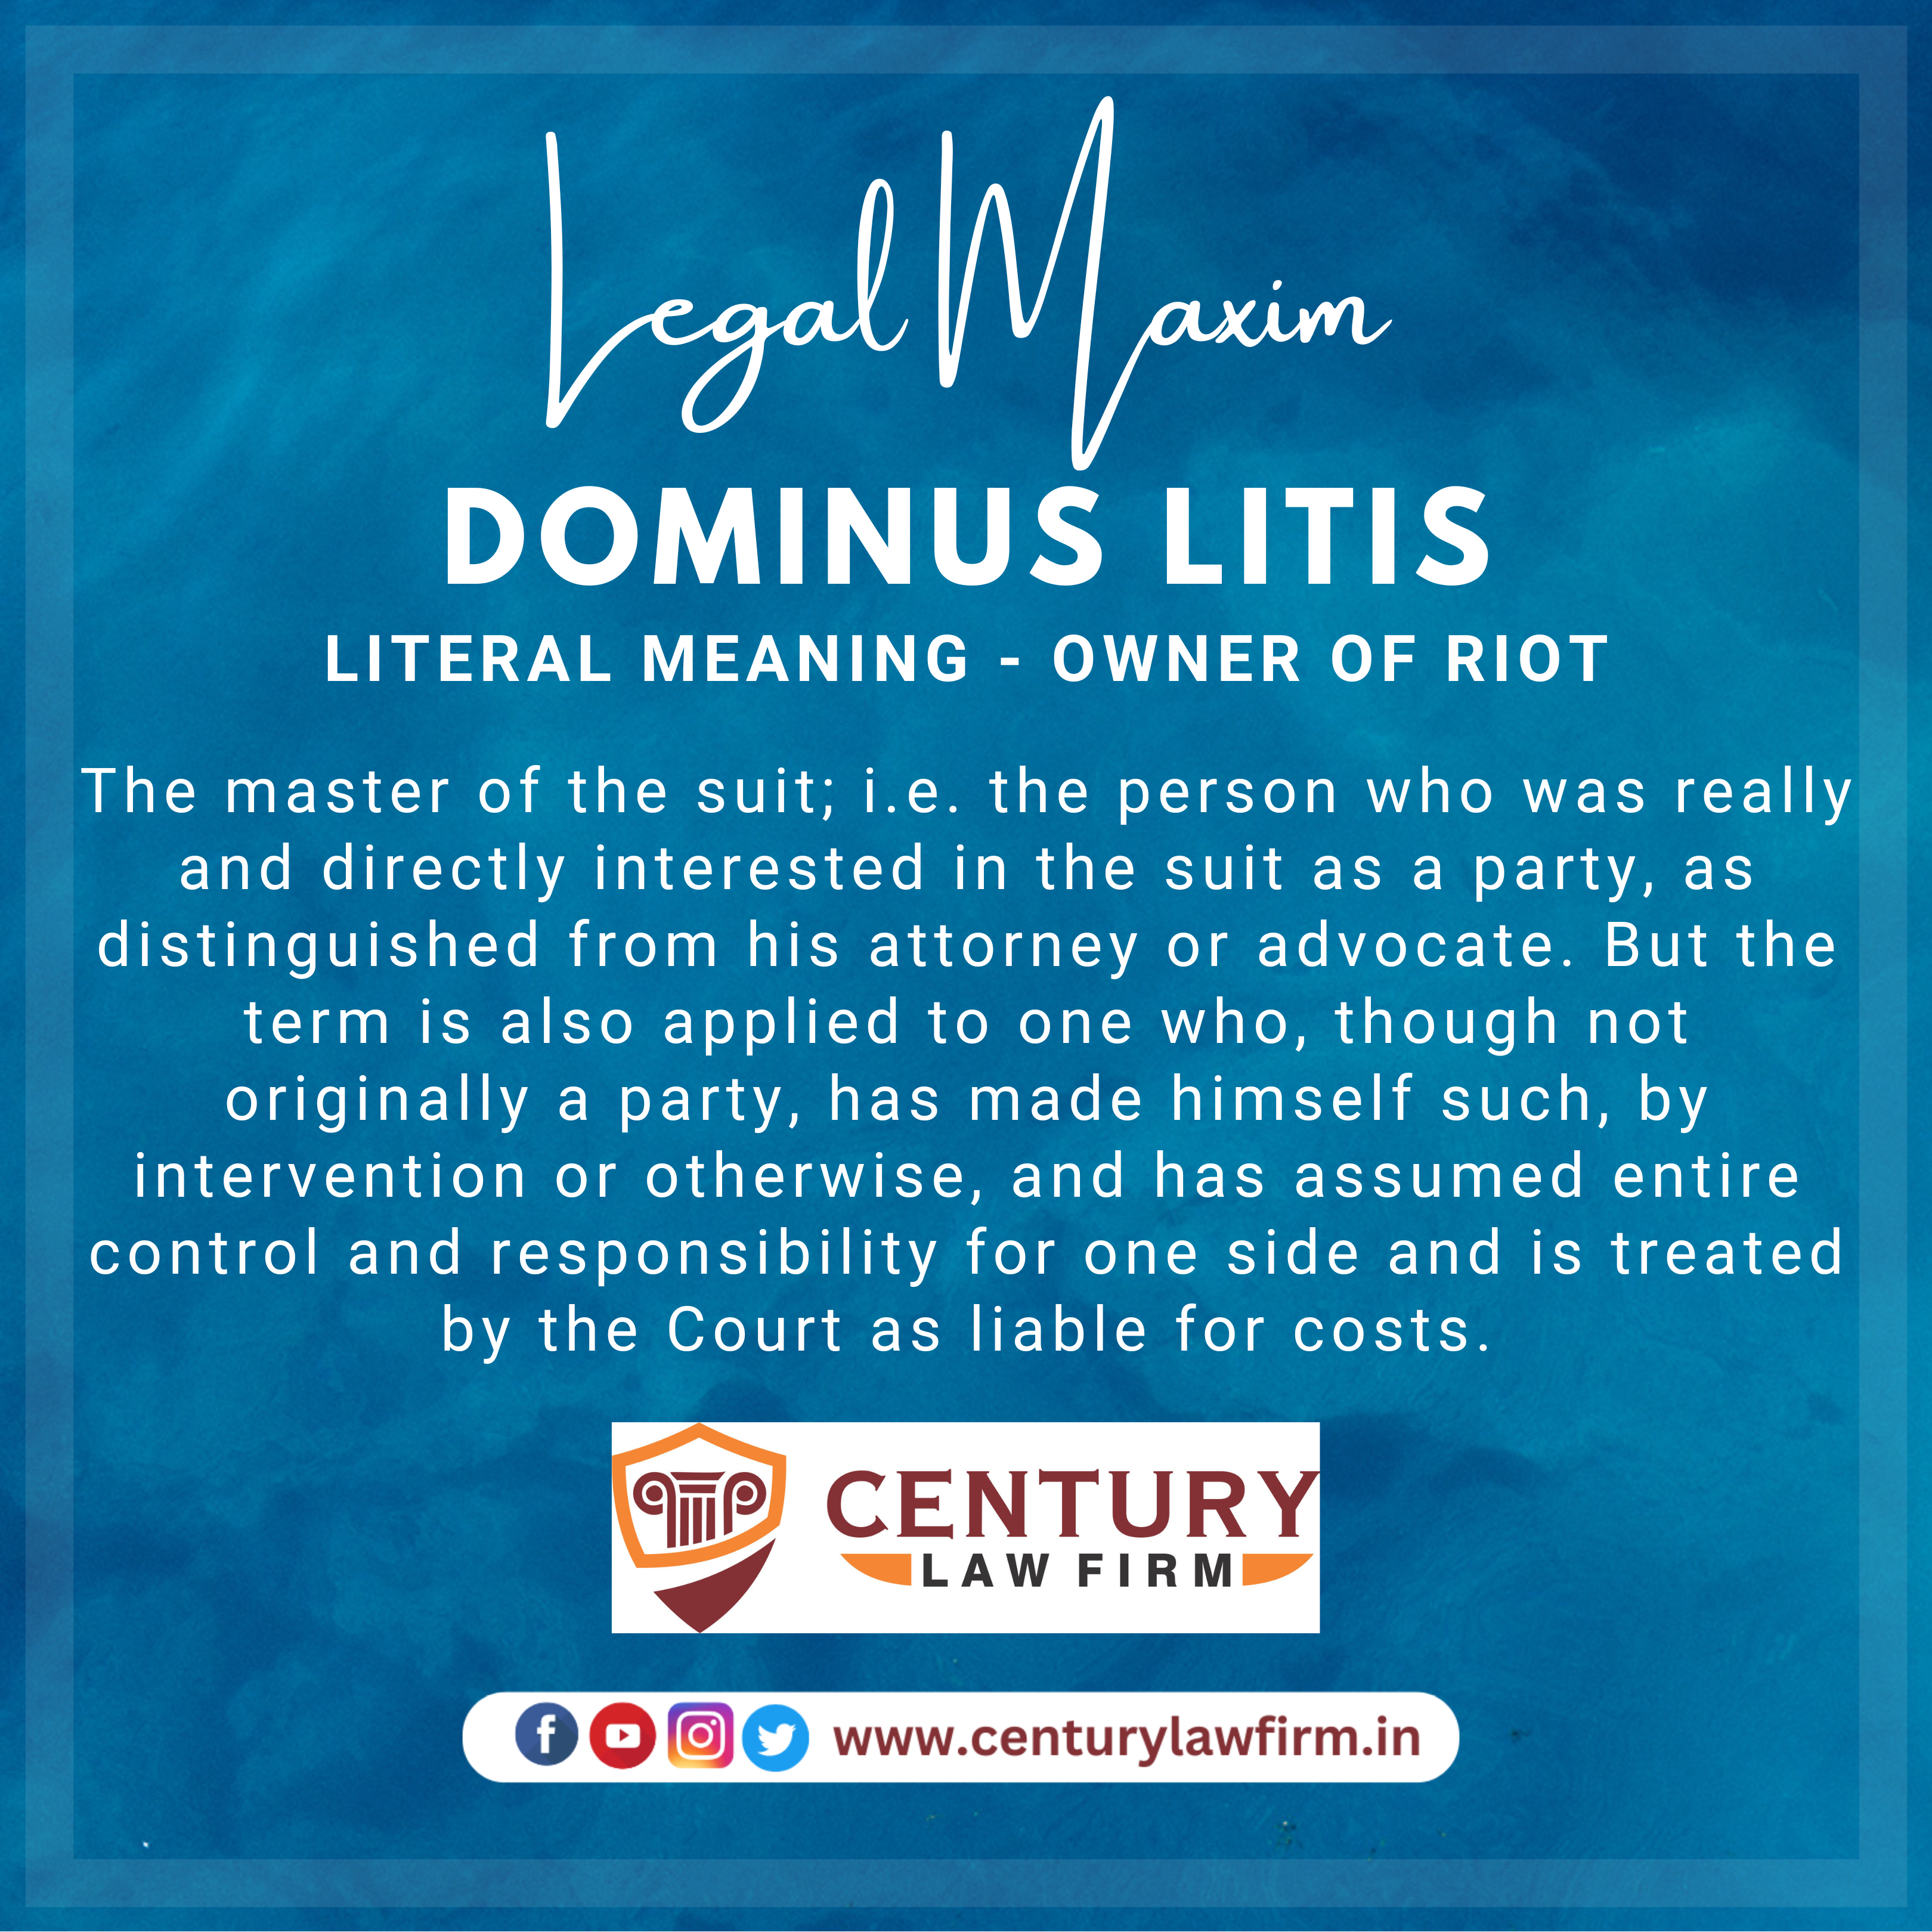 Dominus Litis - Legal Maxim